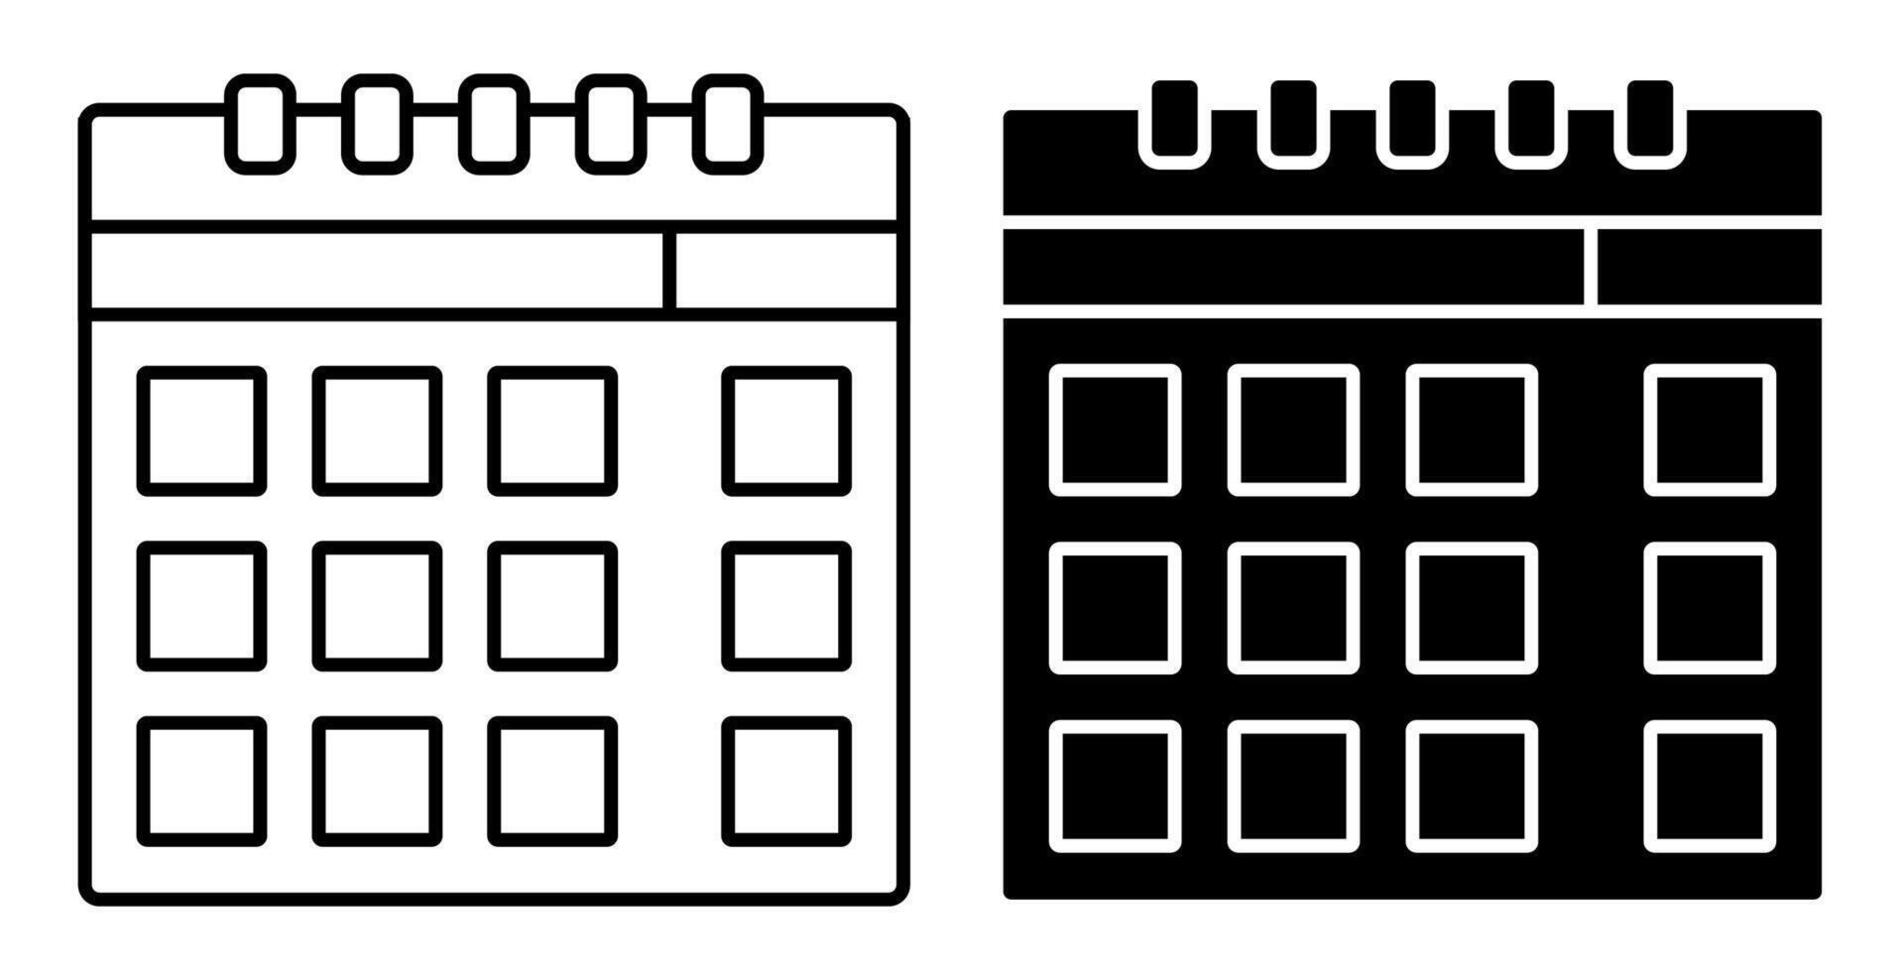 papel pared calendario icono. calificación dias de el semana, meses en calendario. sencillo negro y blanco vector